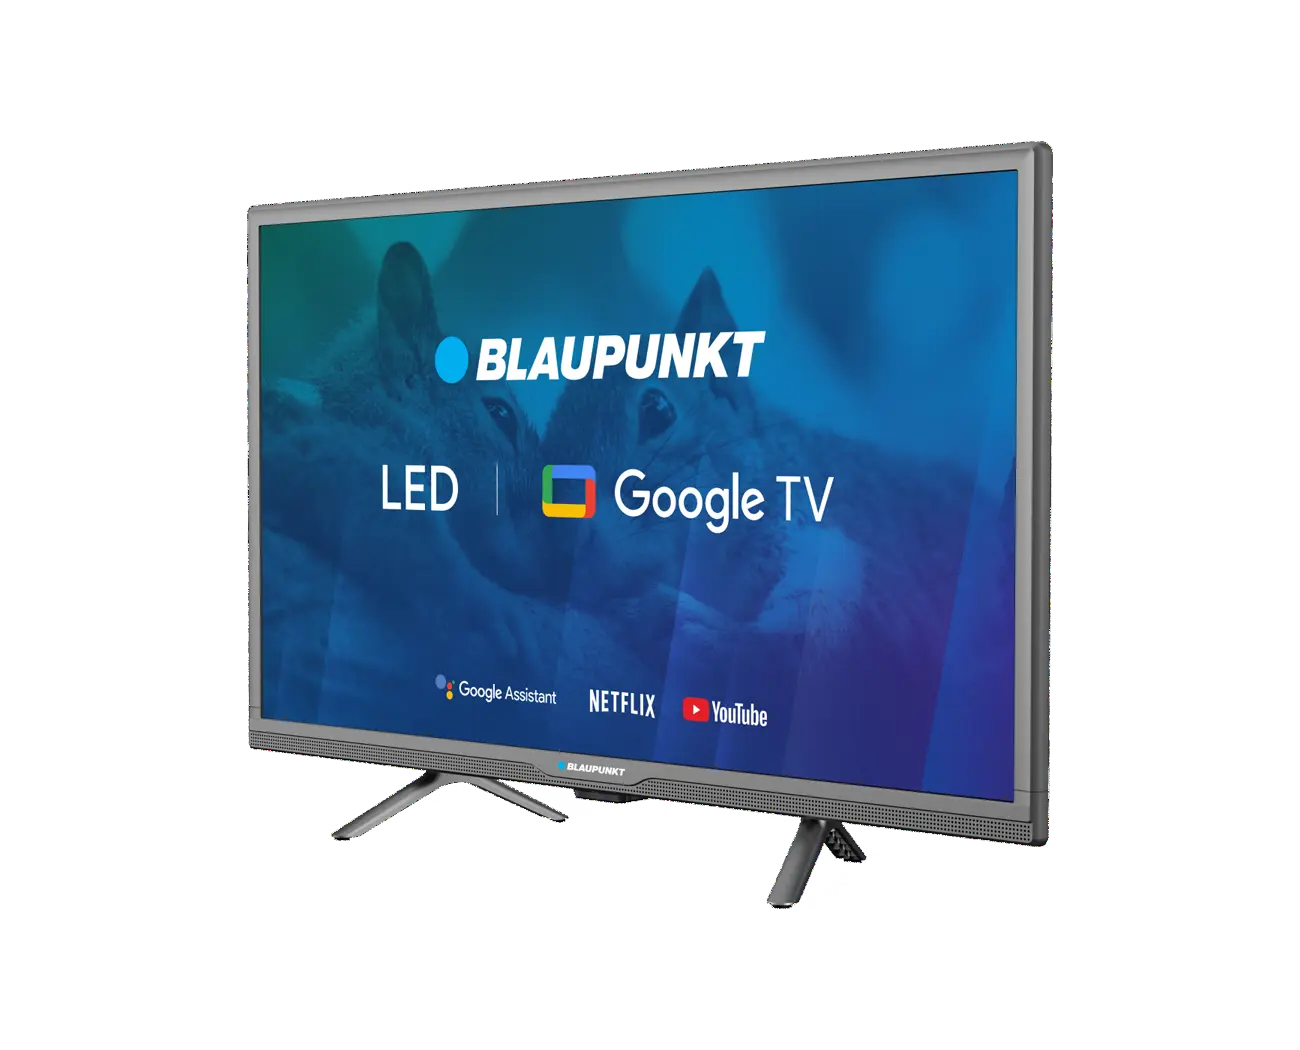 HD Google TV Blaupunkt 24HBG5000